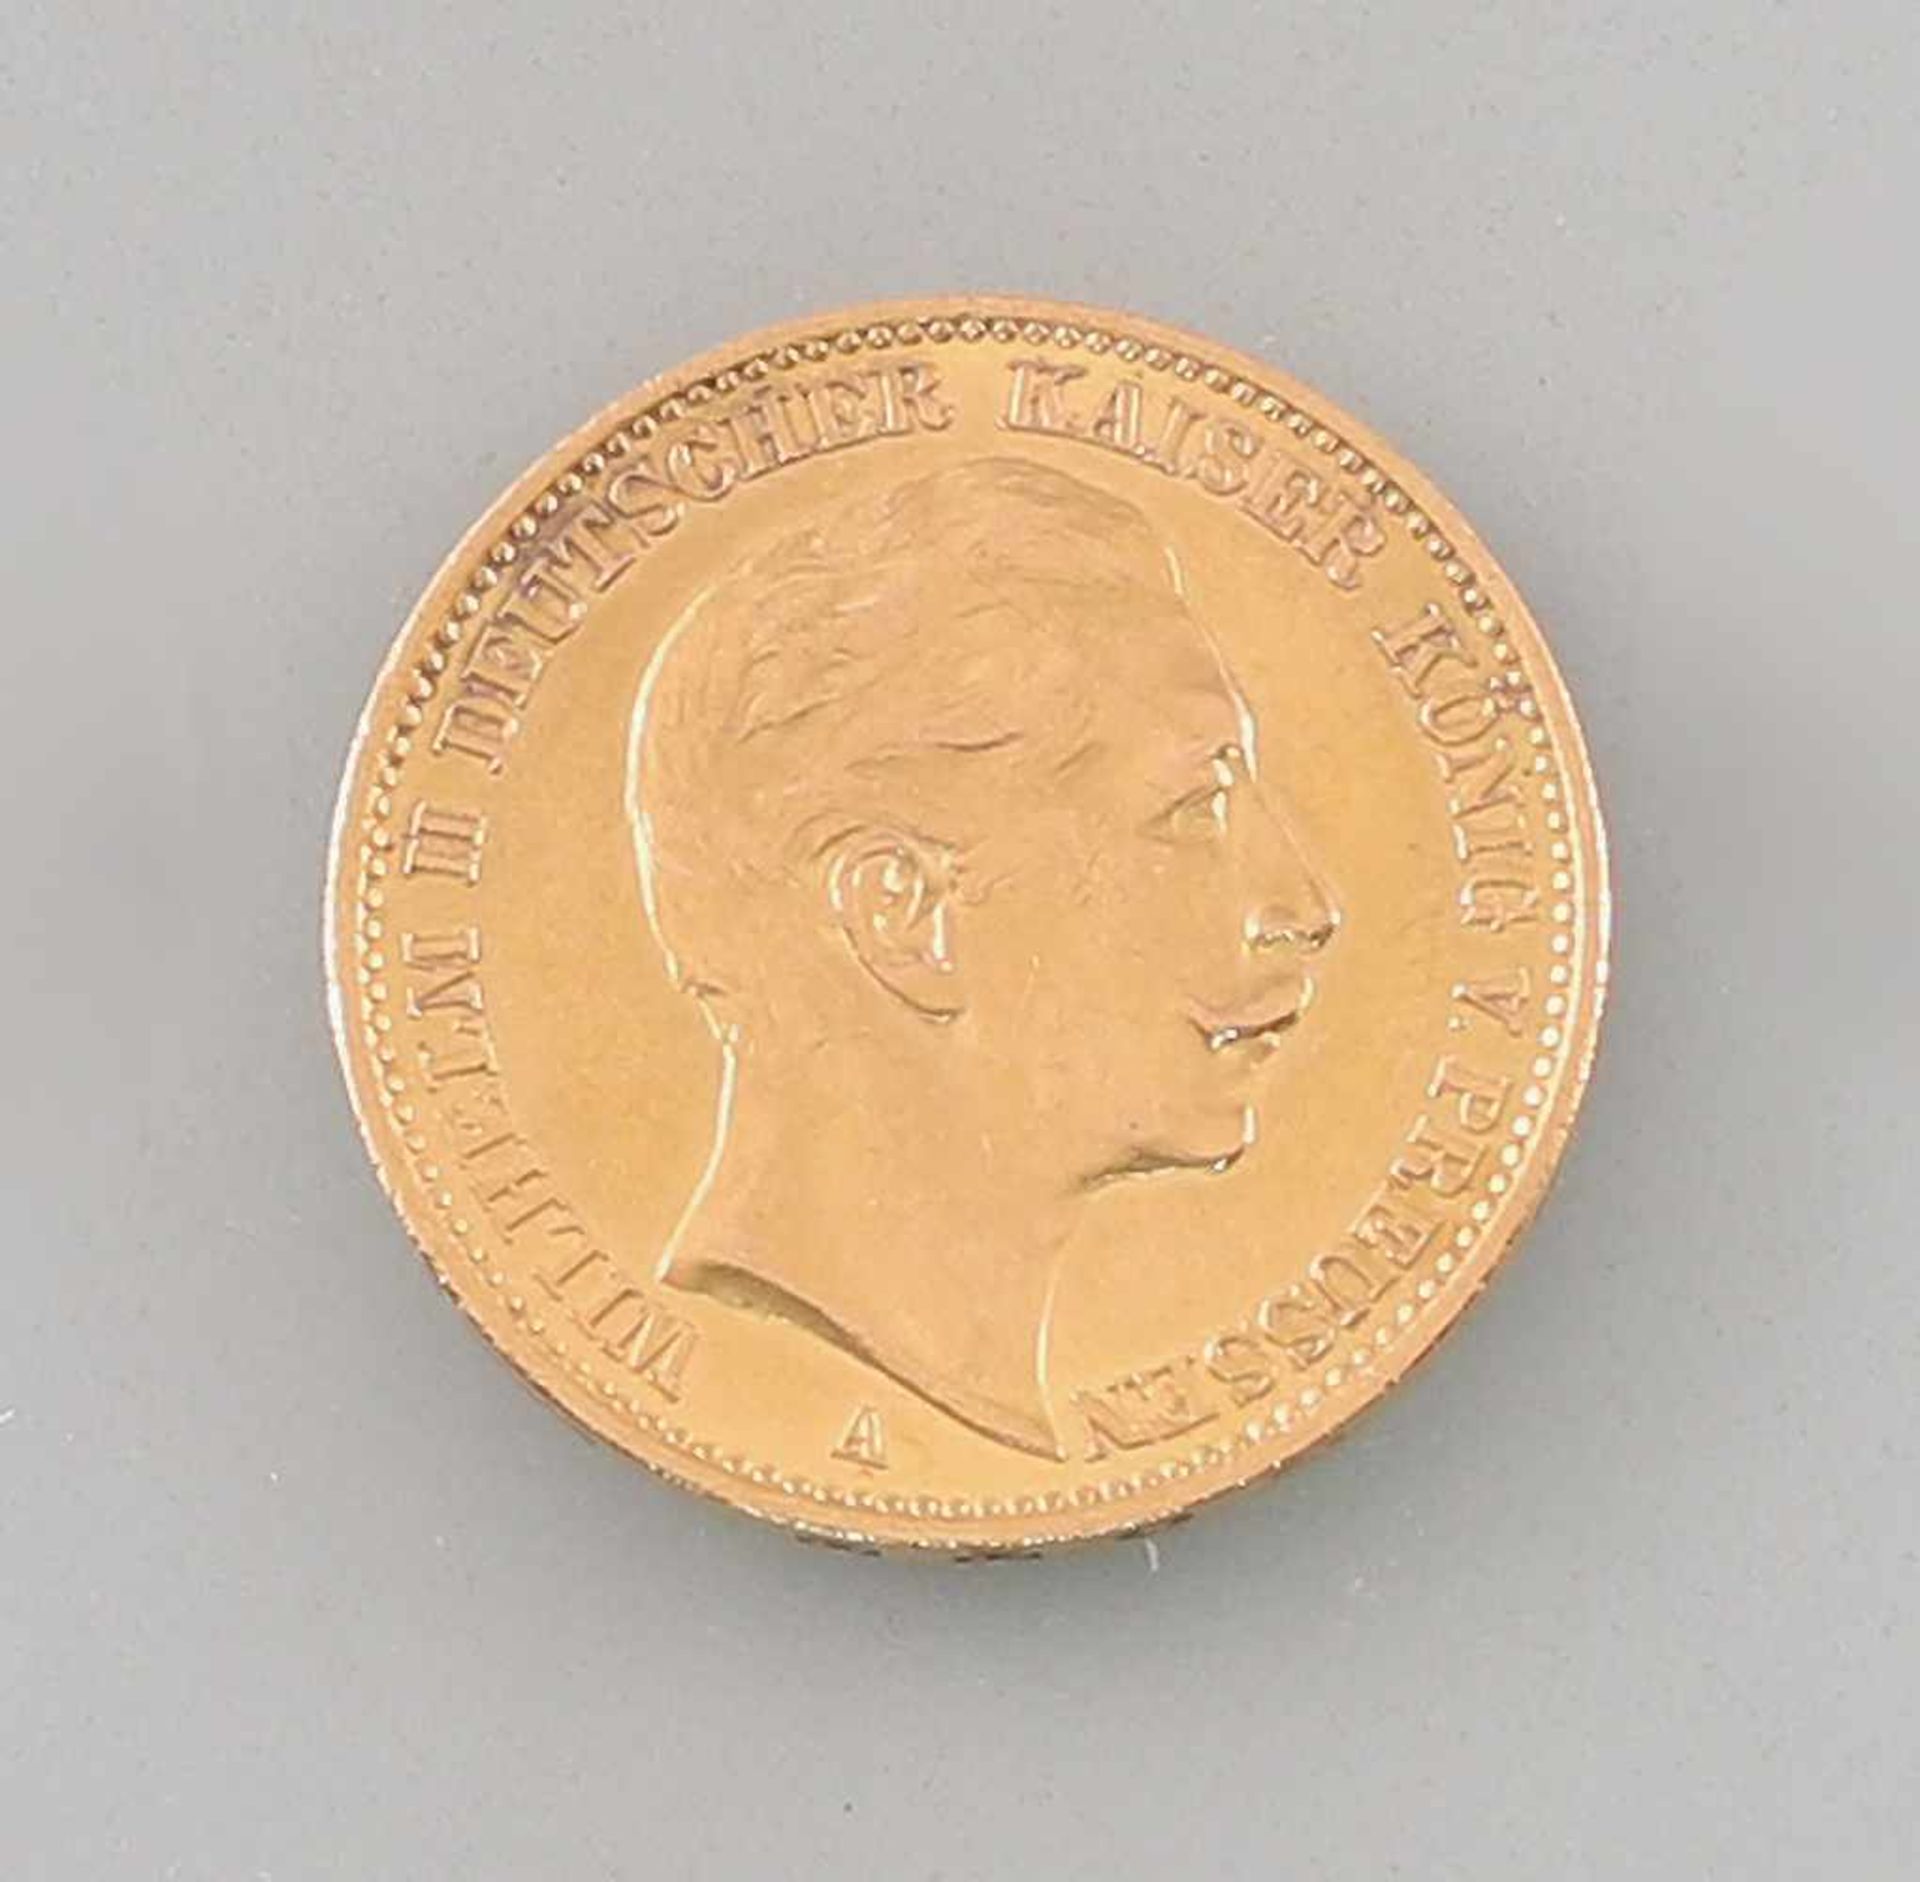 Goldmünze 20 Mark Deutsches Reich Preussen 1912900er Gold, 7,86 g, D 22,5 mm, 20 Mark Deutsches